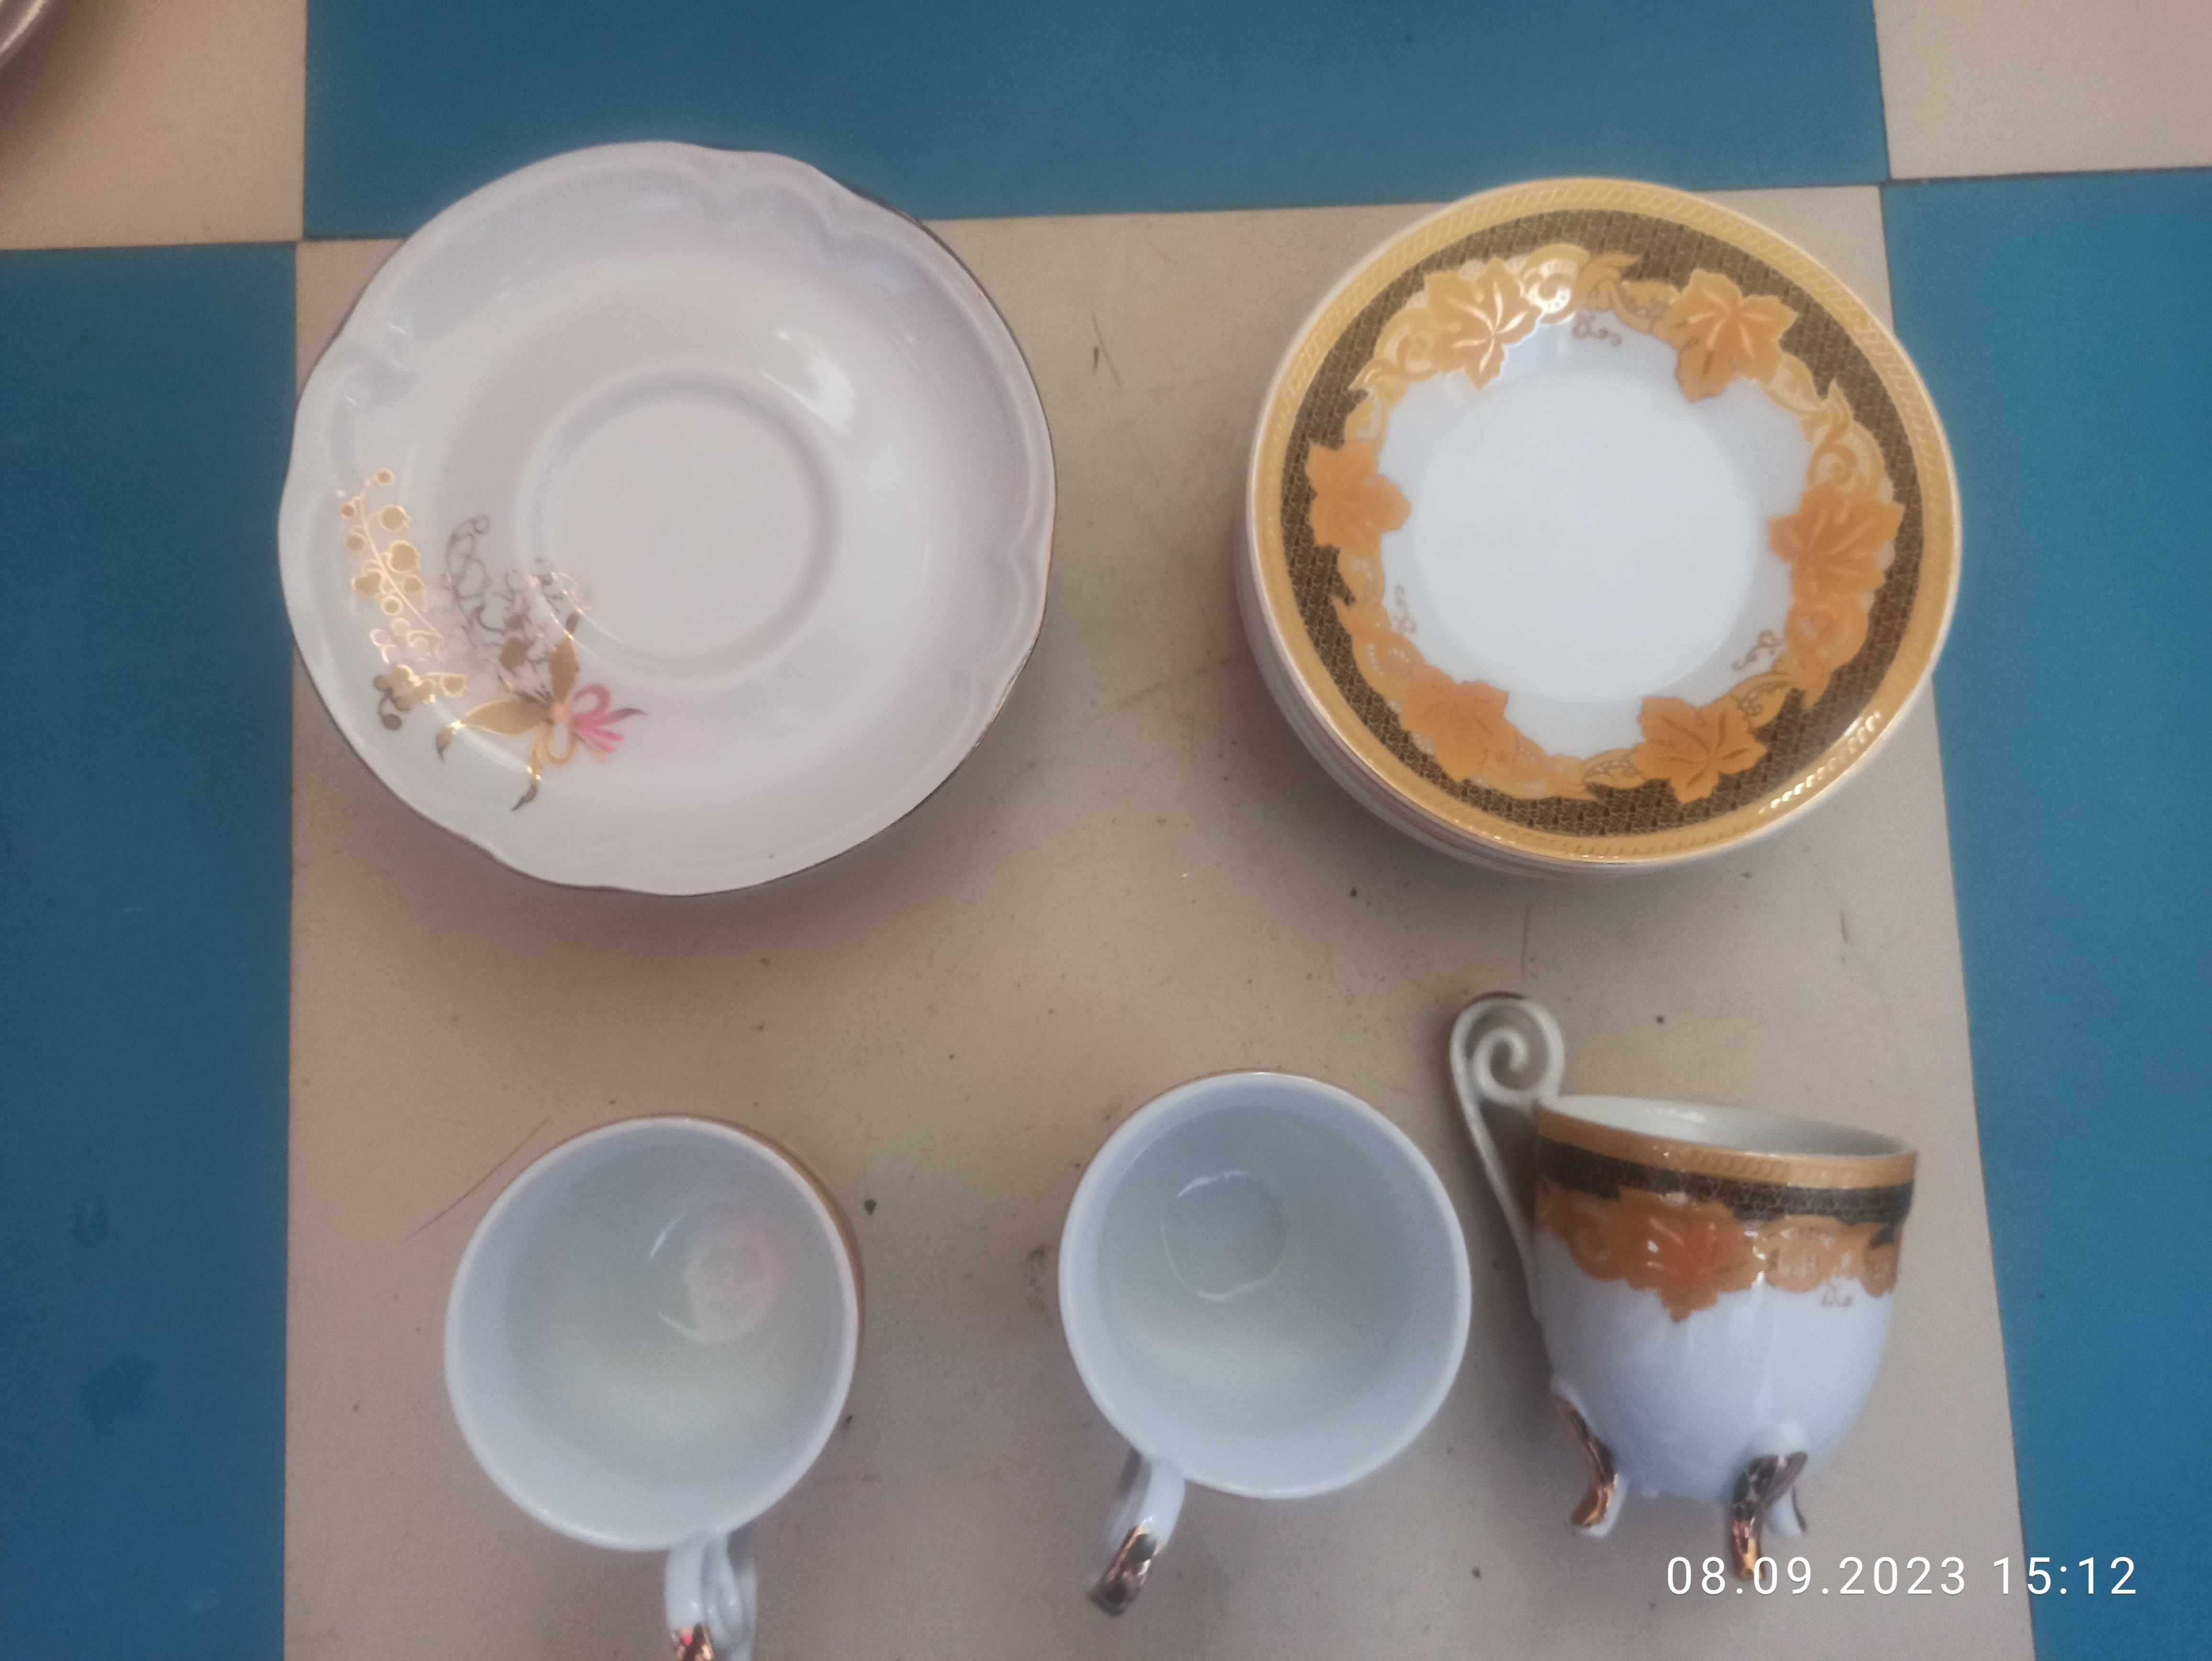 эмалированные тарелки и керамические тарелки, блюдца, блюда